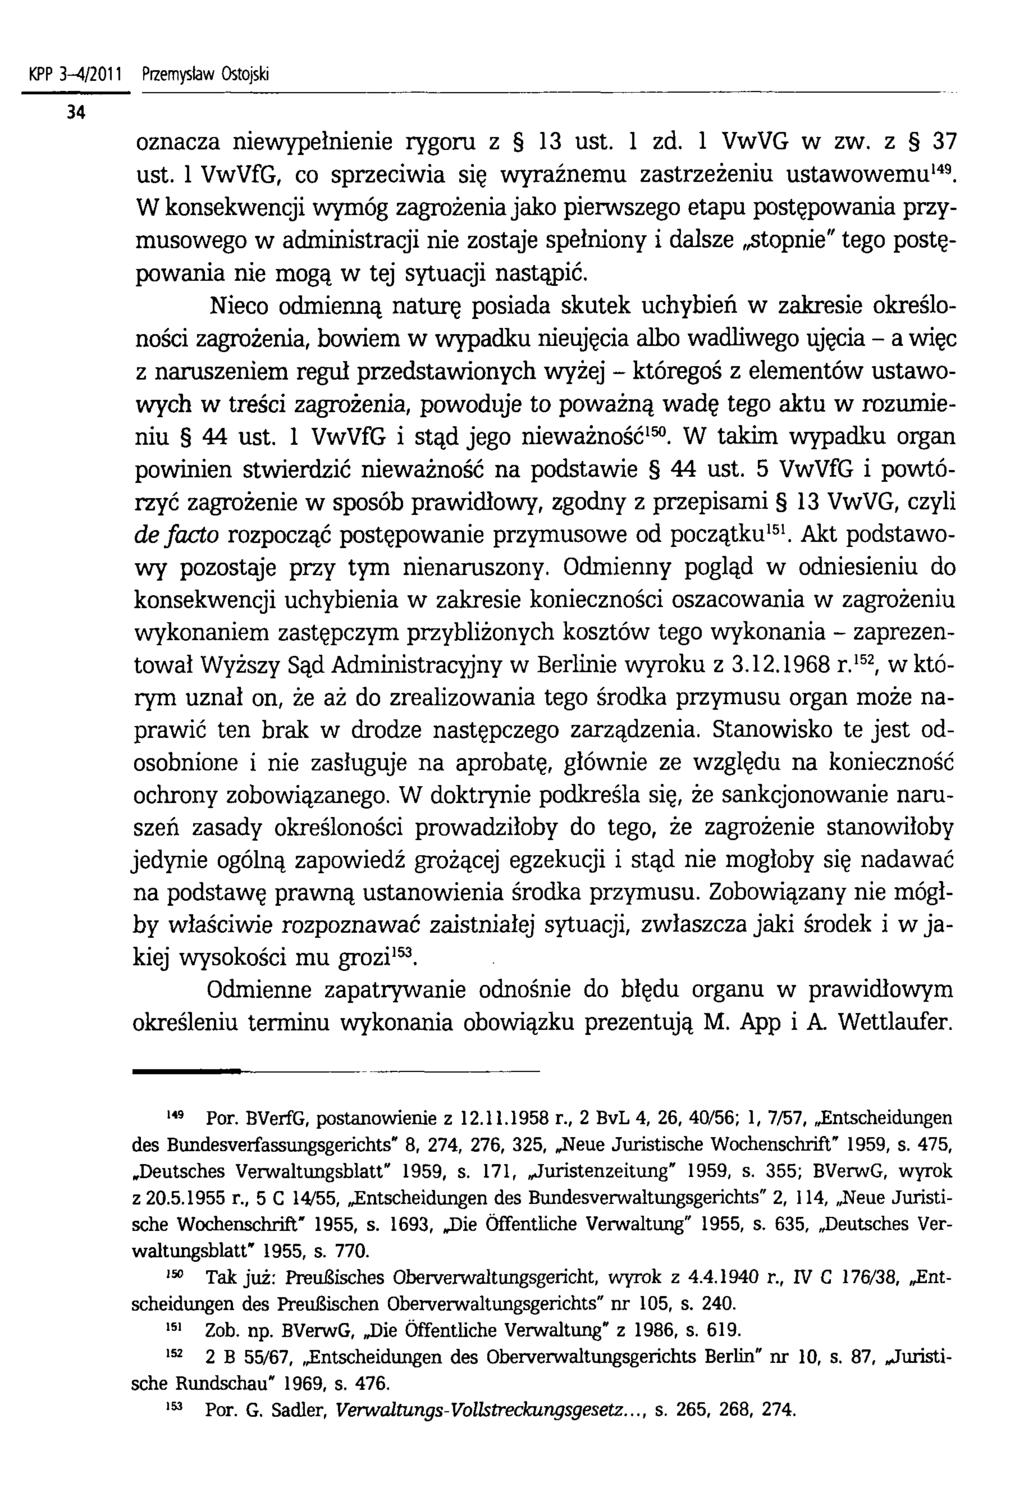 KPP 3 4/2011 Przemysław Ostojski oznacza niewypełnienie rygoru z 13 ust. 1 zd. 1 VwVG w zw. z 37 ust. 1 VwVfG, co sprzeciwia się wyraźnemu zastrzeżeniu ustawowemu149.